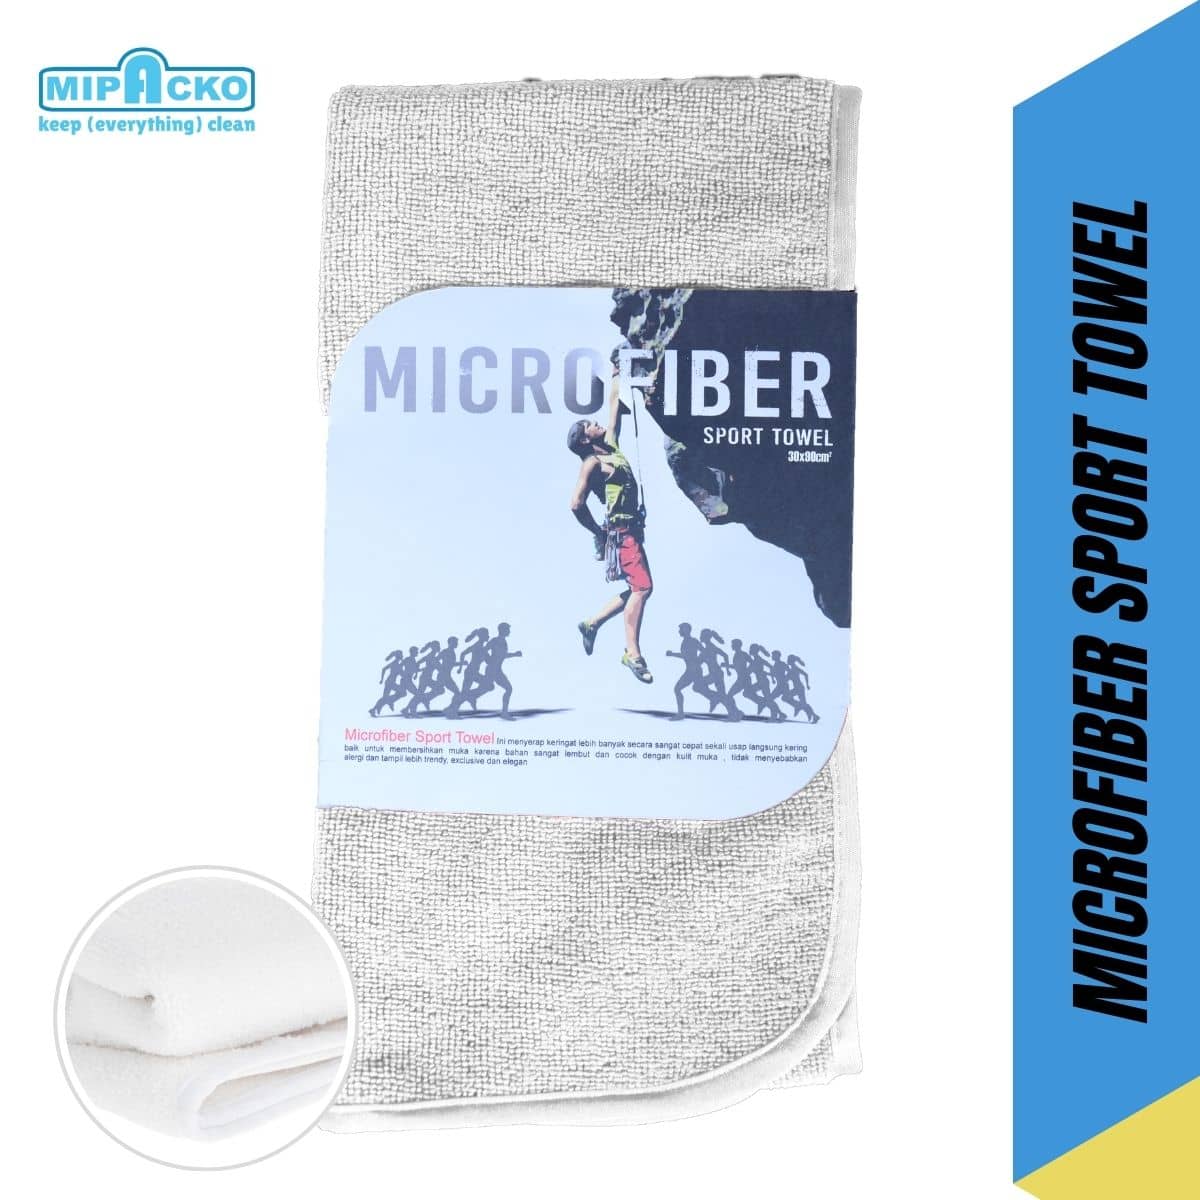 Handuk Olahraga Microfiber Mipacko